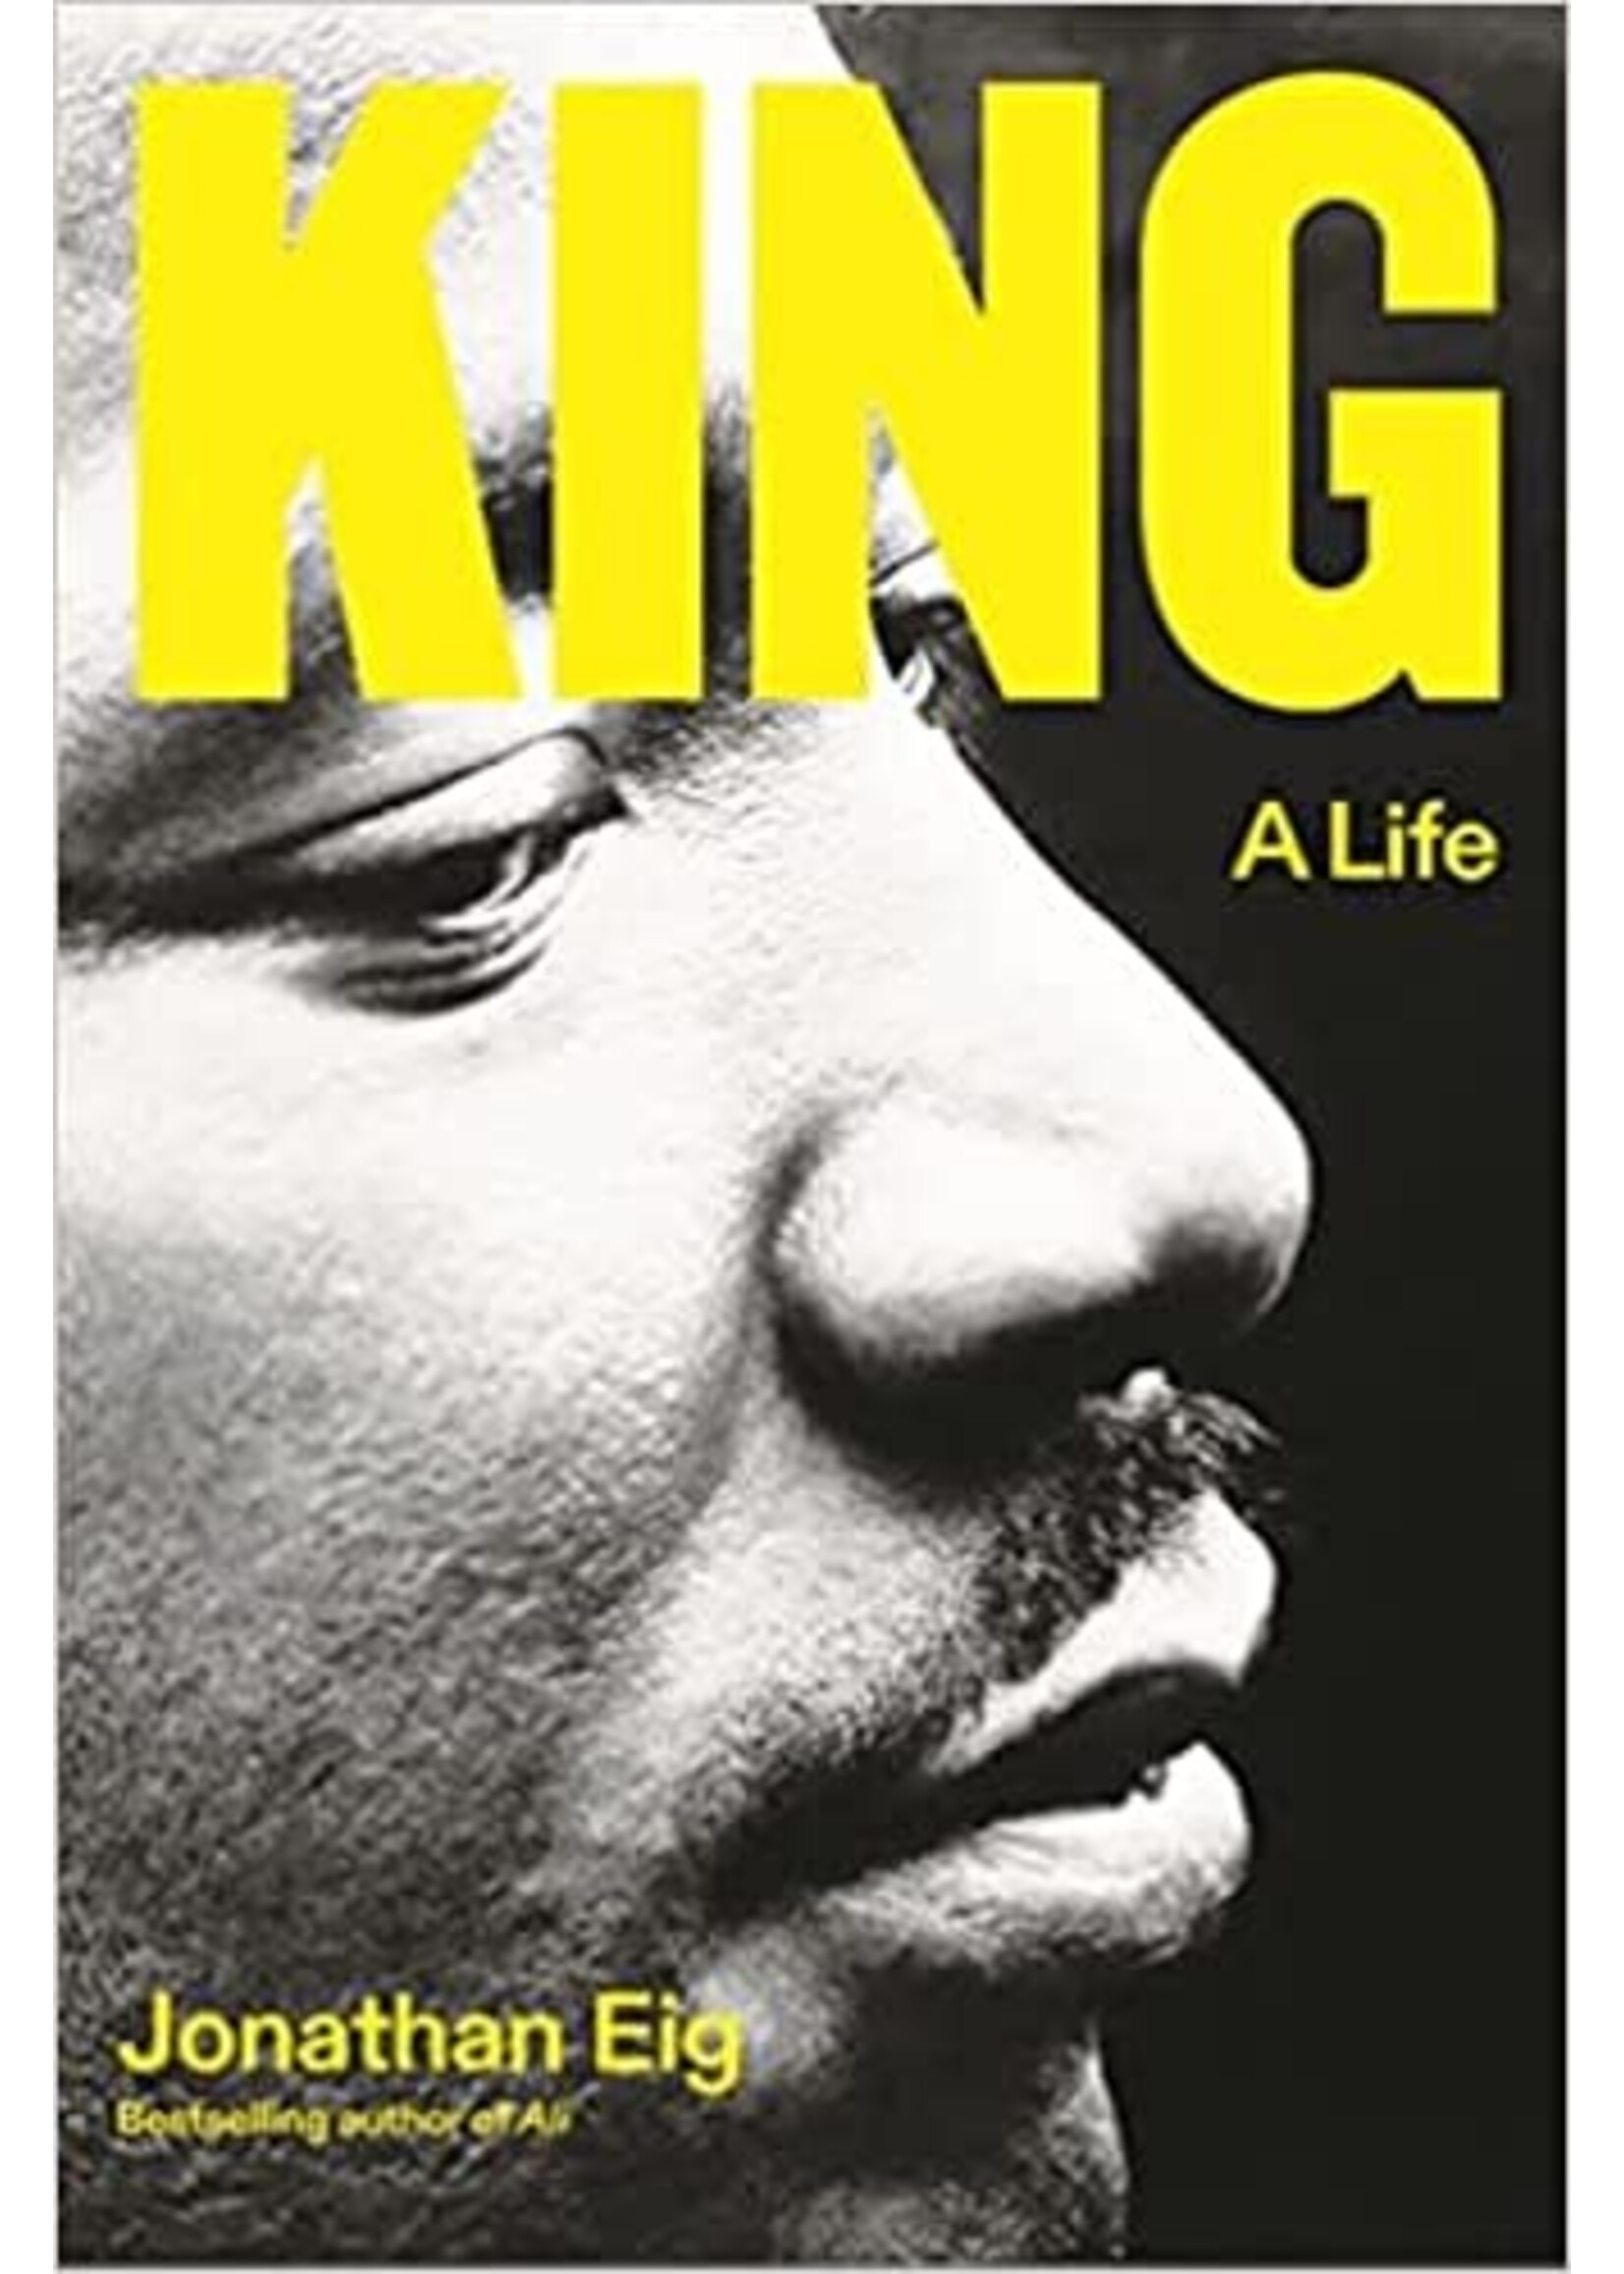 King: A Life by Jonathan Eig